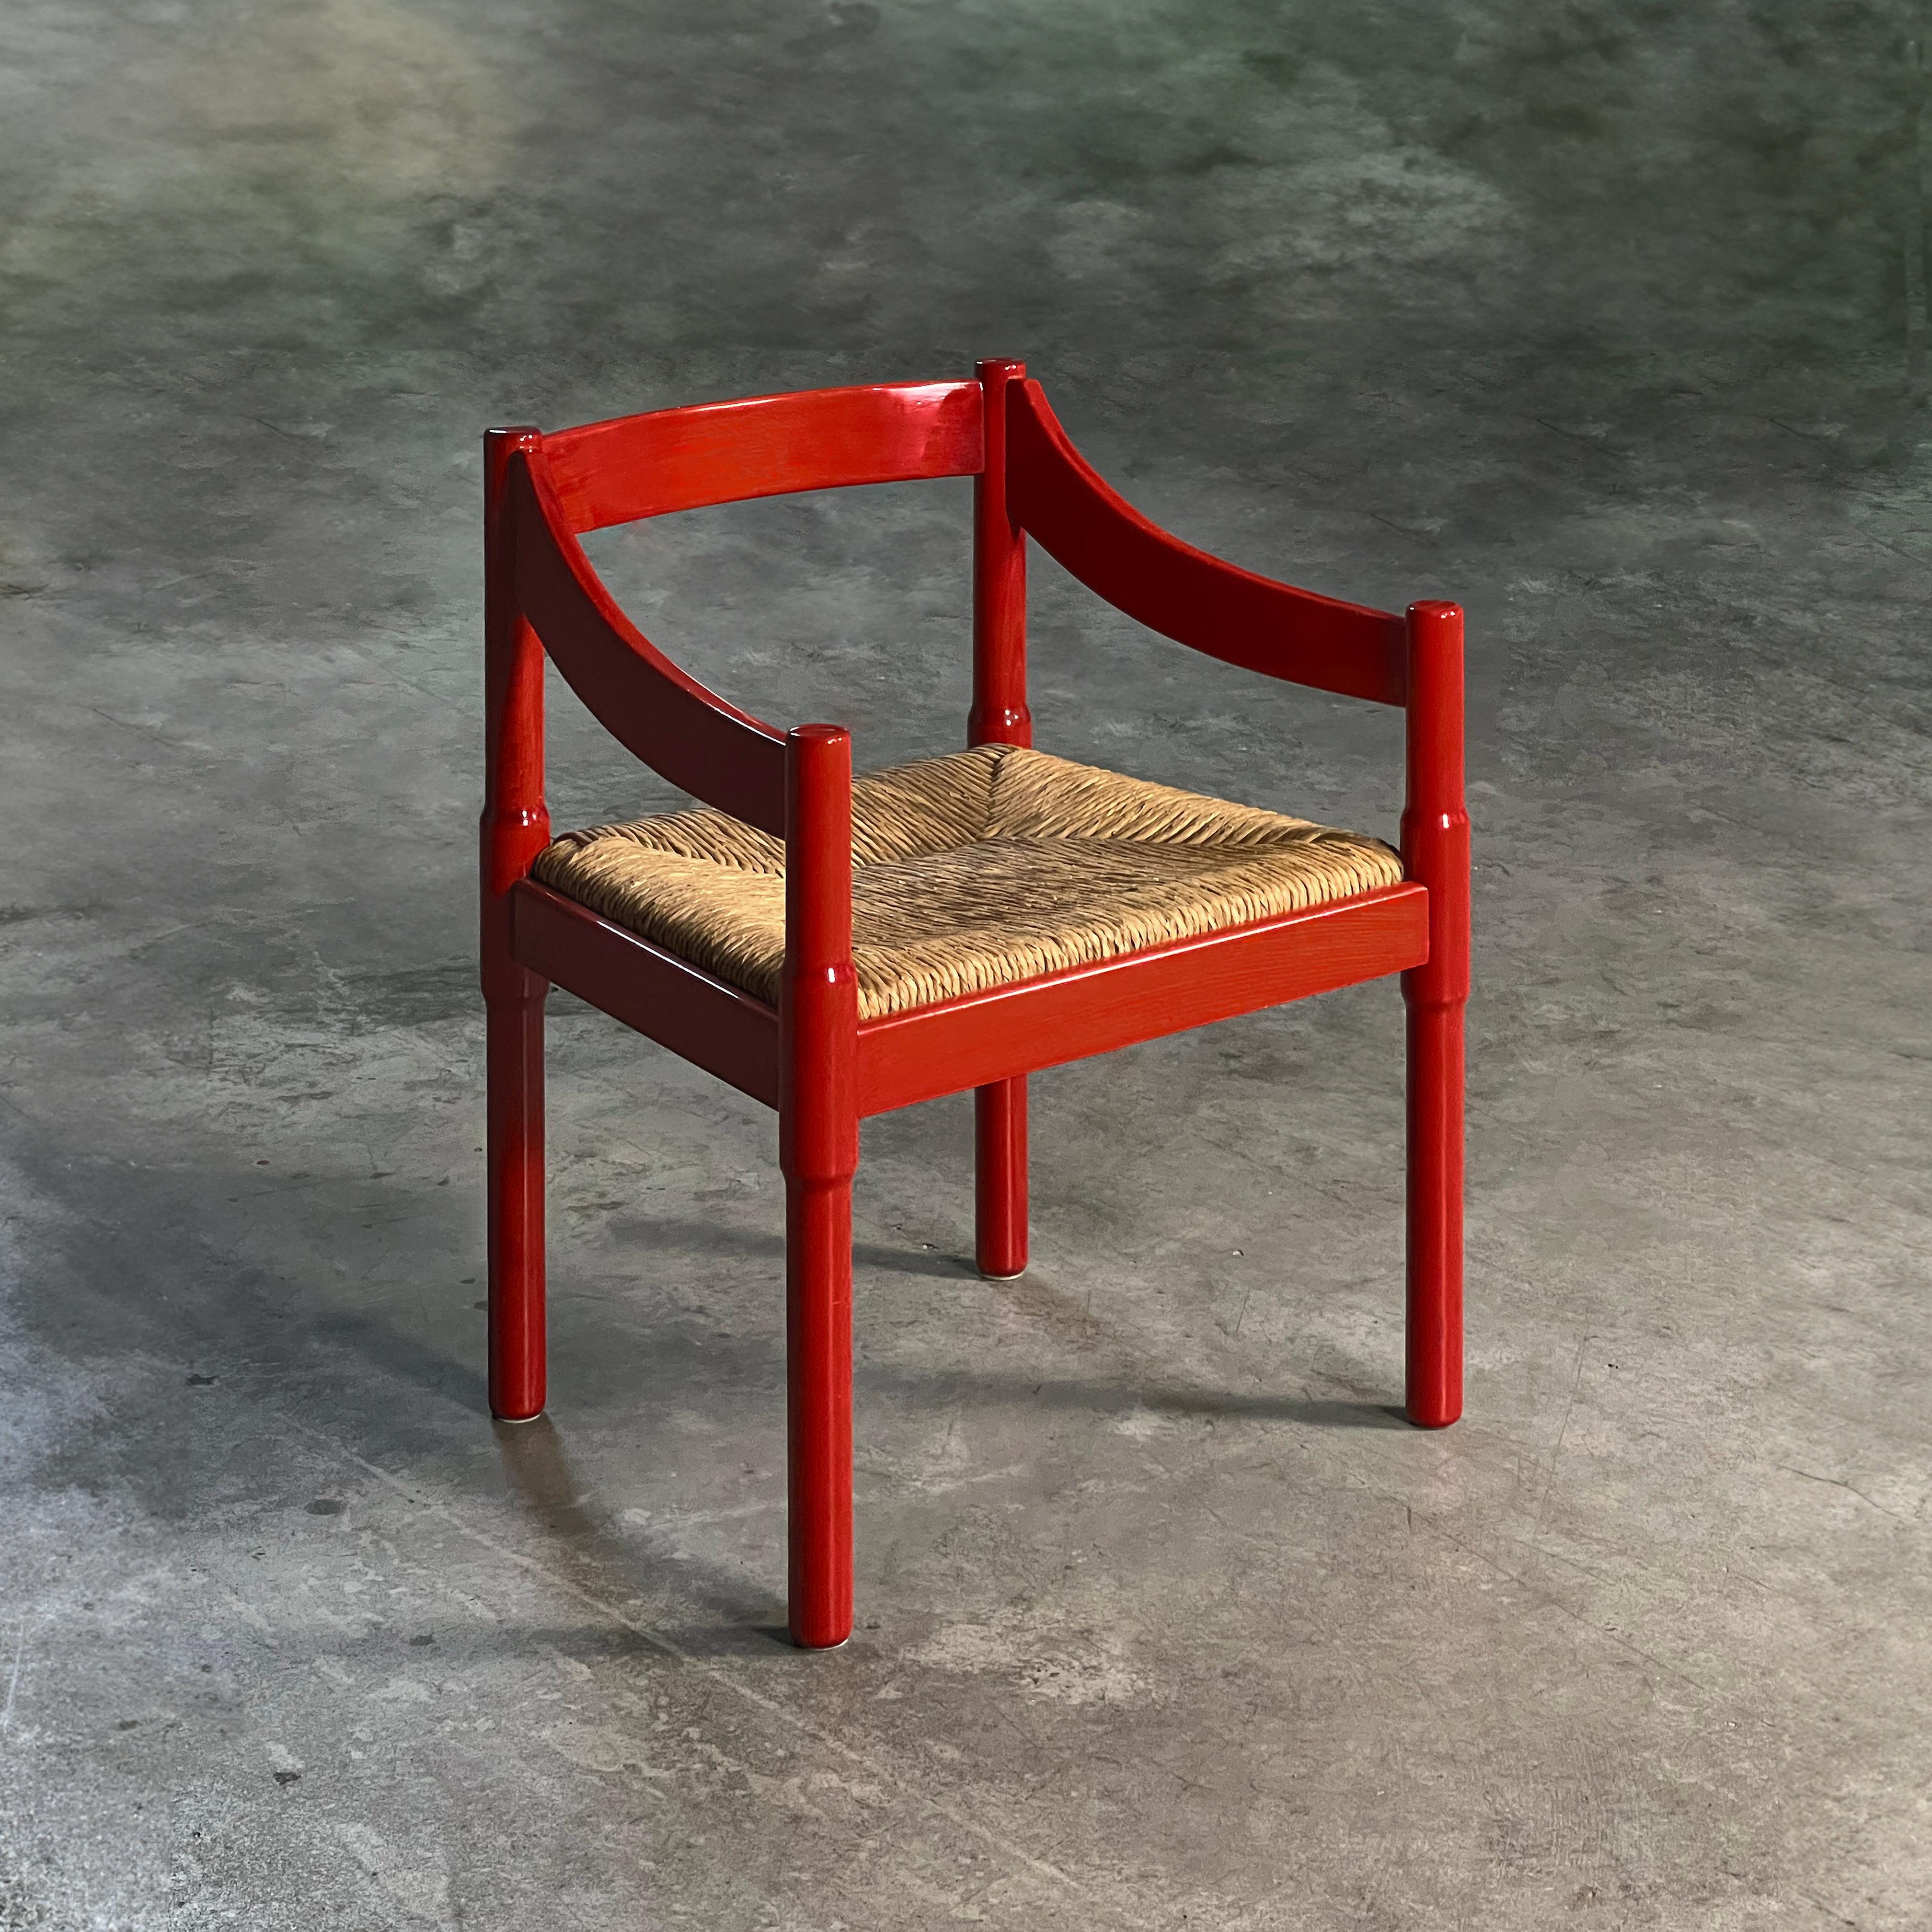 Chaise Carimate de Vico Magistretti, Italie, années 1960

Voici la captivante chaise Carimate, un chef-d'œuvre sculpté dans un riche hêtre massif teinté en rouge et donné vie par l'architecte et designer visionnaire Vico Magistretti.

Le siège en